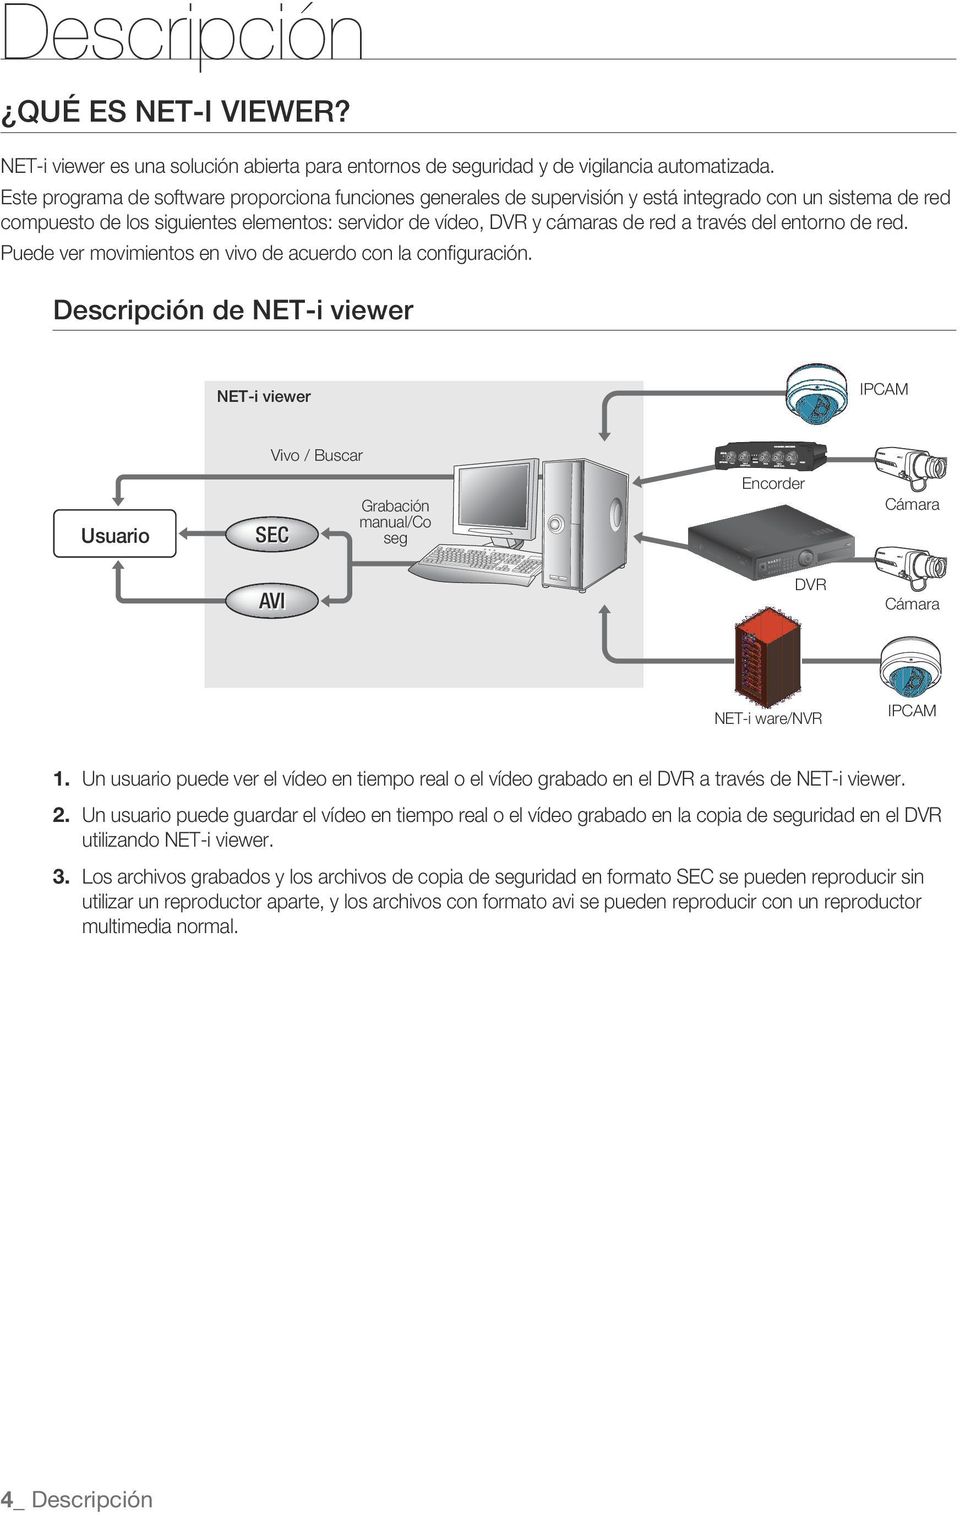 de red compuesto de los siguientes elementos: servidor de vídeo, DVR y cámaras de red a través del entorno de red Puede ver movimientos en vivo de acuerdo con la configuración Descripción de NET-i